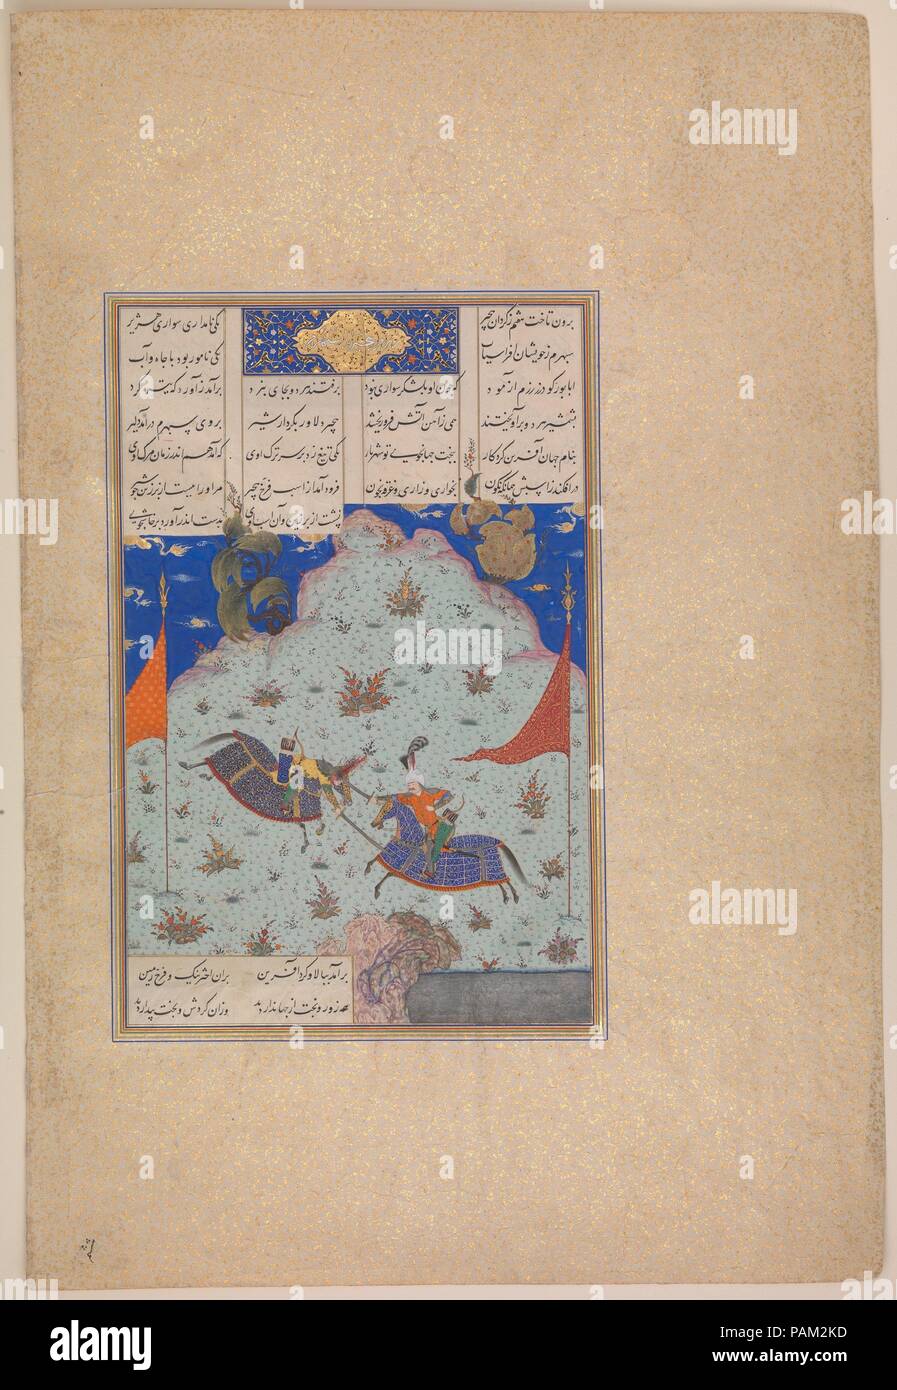 "Il Sesto giostra dei corvi: Bizhan Versus Ruyyin', folio 343r dal Shahnama (Libro dei Re) di Shah Tahmasp. Artista: dipinto attribuito a 'Abd al-Vahhab. Autore: Abu'l Qasim Firdausi (935-1020). Dimensioni: Pittura (recto): H. 6 1/16 x W. 6 3/4 in. (H. 15,4 x W. 17.1 cm) Pittura (verso): H. 8 9/16 x W. 6 3/4 in. (H. 21.7 x W. 17.1 cm) intera pagina: H. 18 5/8 x W. 12 9/16 in. (H. 47,3 x W. 31,9 cm). Data: ca. 1525-30. Folio 343r: il sesto "Giostra del Rooks': Bizhan versus Ruyin nel sesto giostra Bizhan, Giv il Figlio prende su Ruyin, figlio di Pirano. Quando le frecce fare nessuna ammaccatura nel Foto Stock